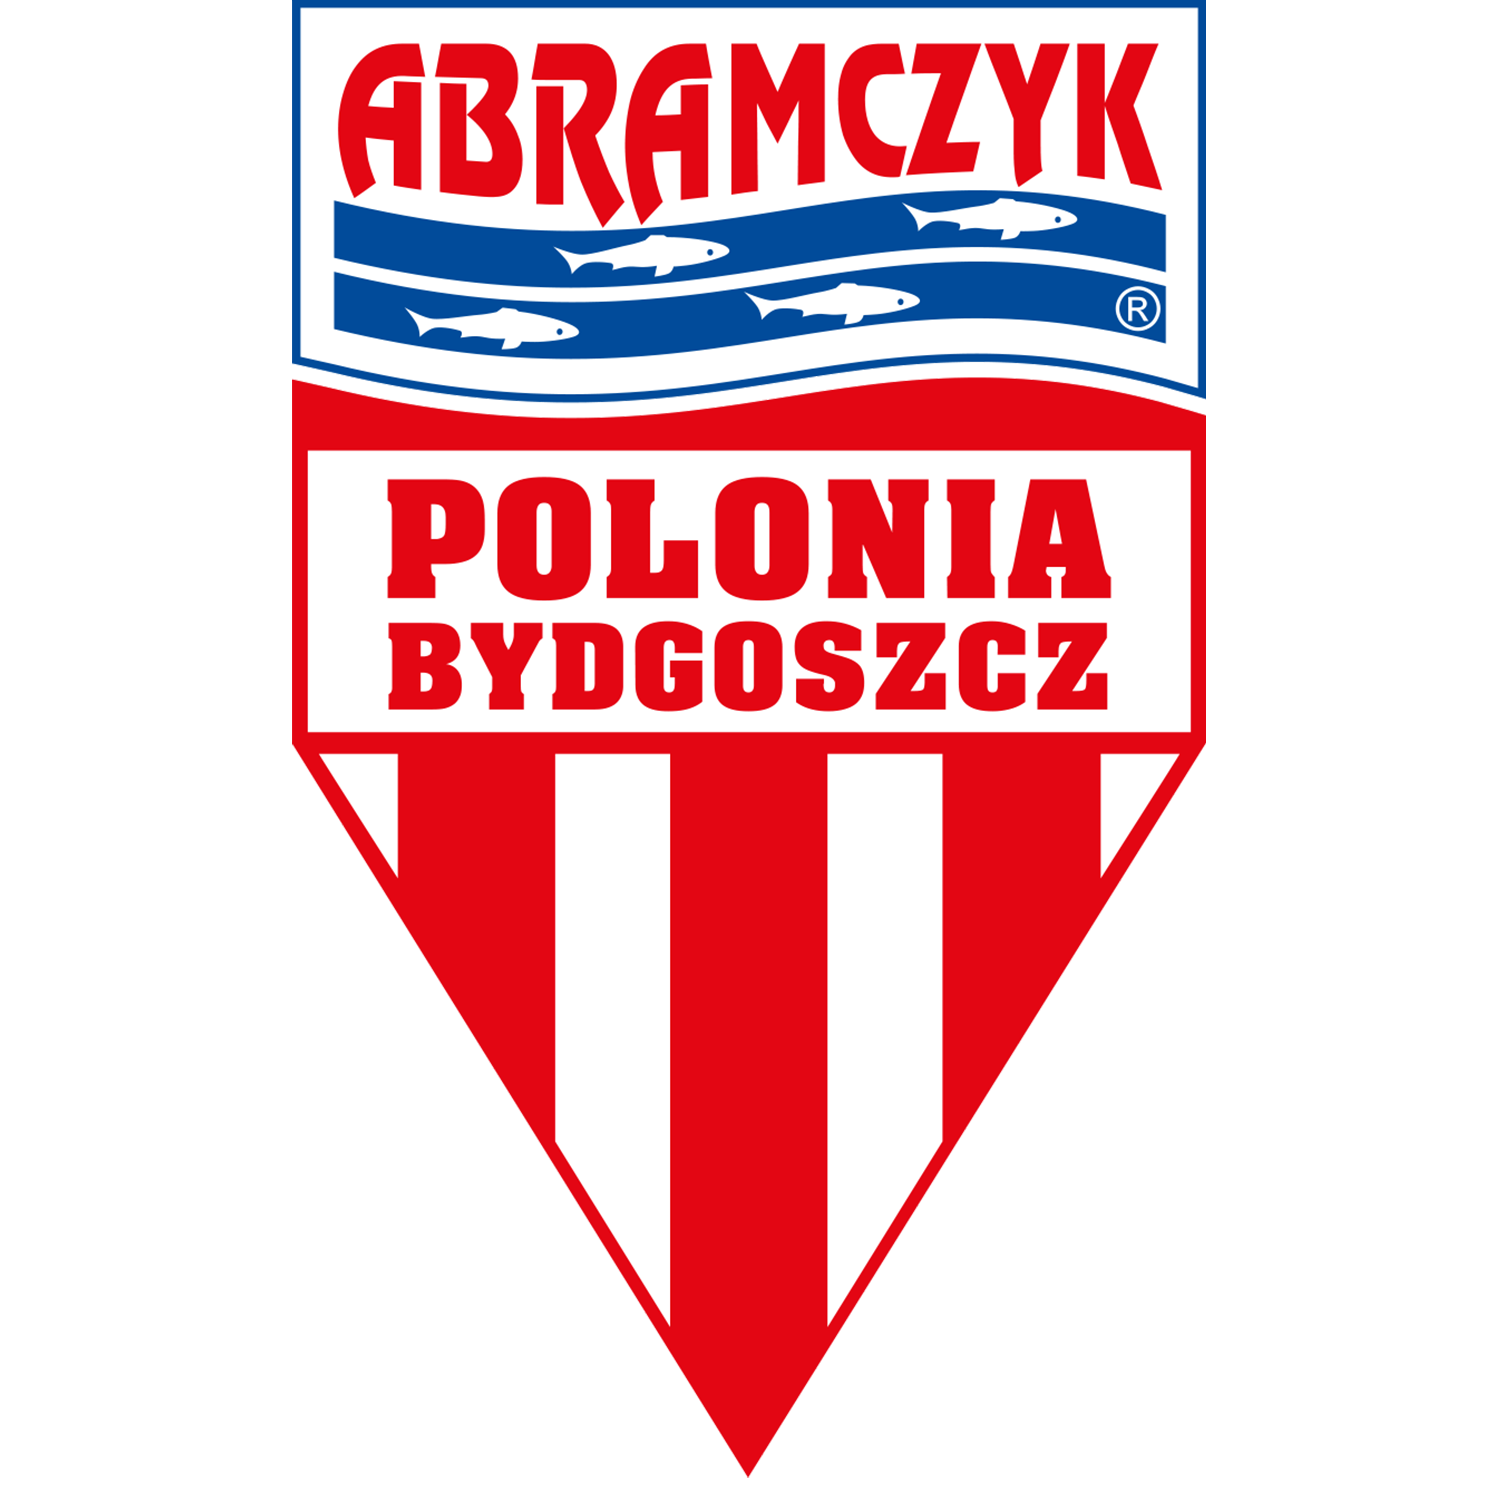 PB.png Logo